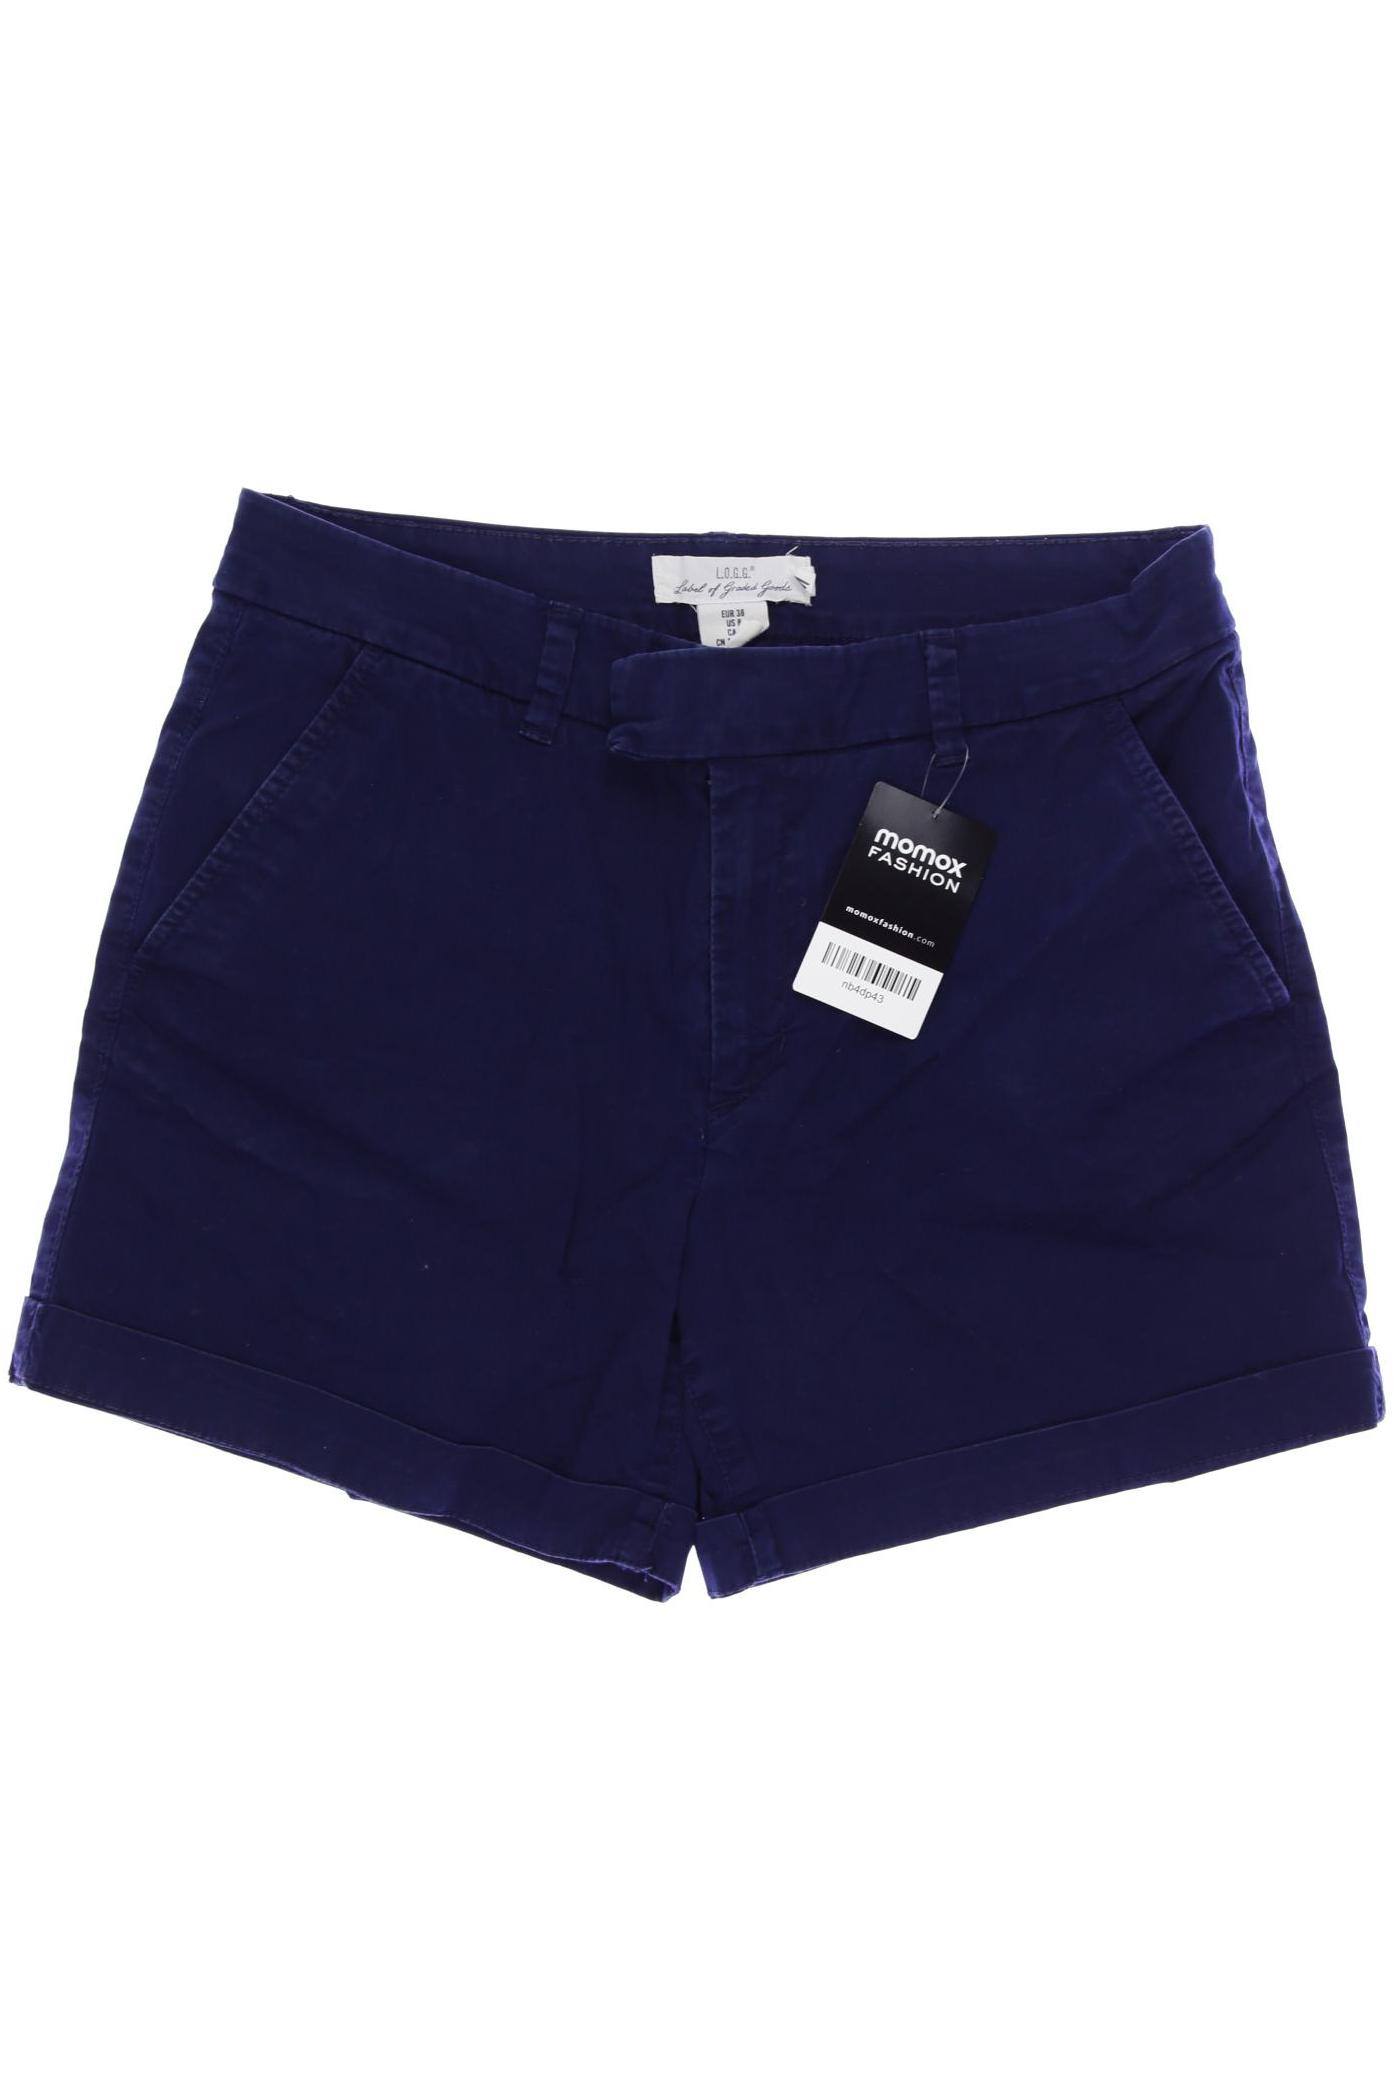 H&M Damen Shorts, marineblau, Gr. 38 von H&M